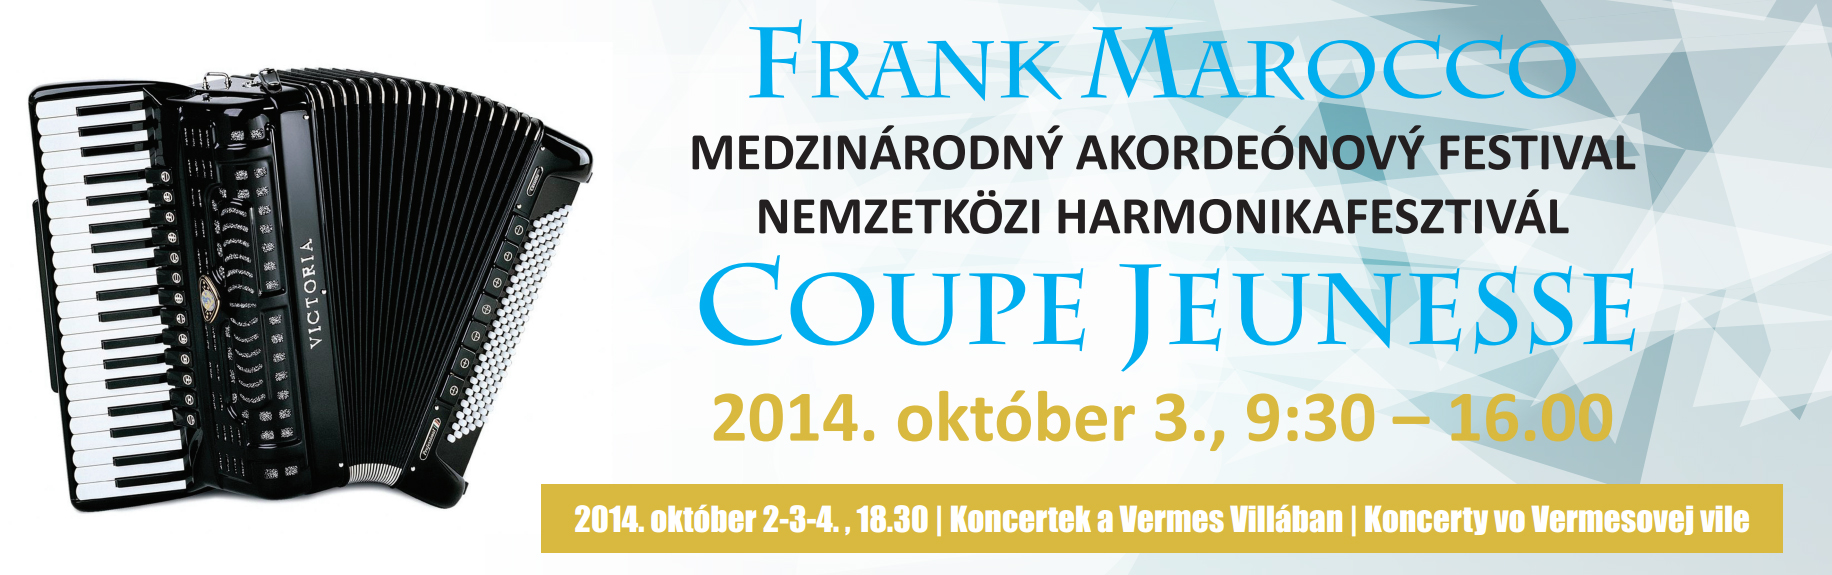 Medzinrodn akordenov festival Dunajsk Streda 2014